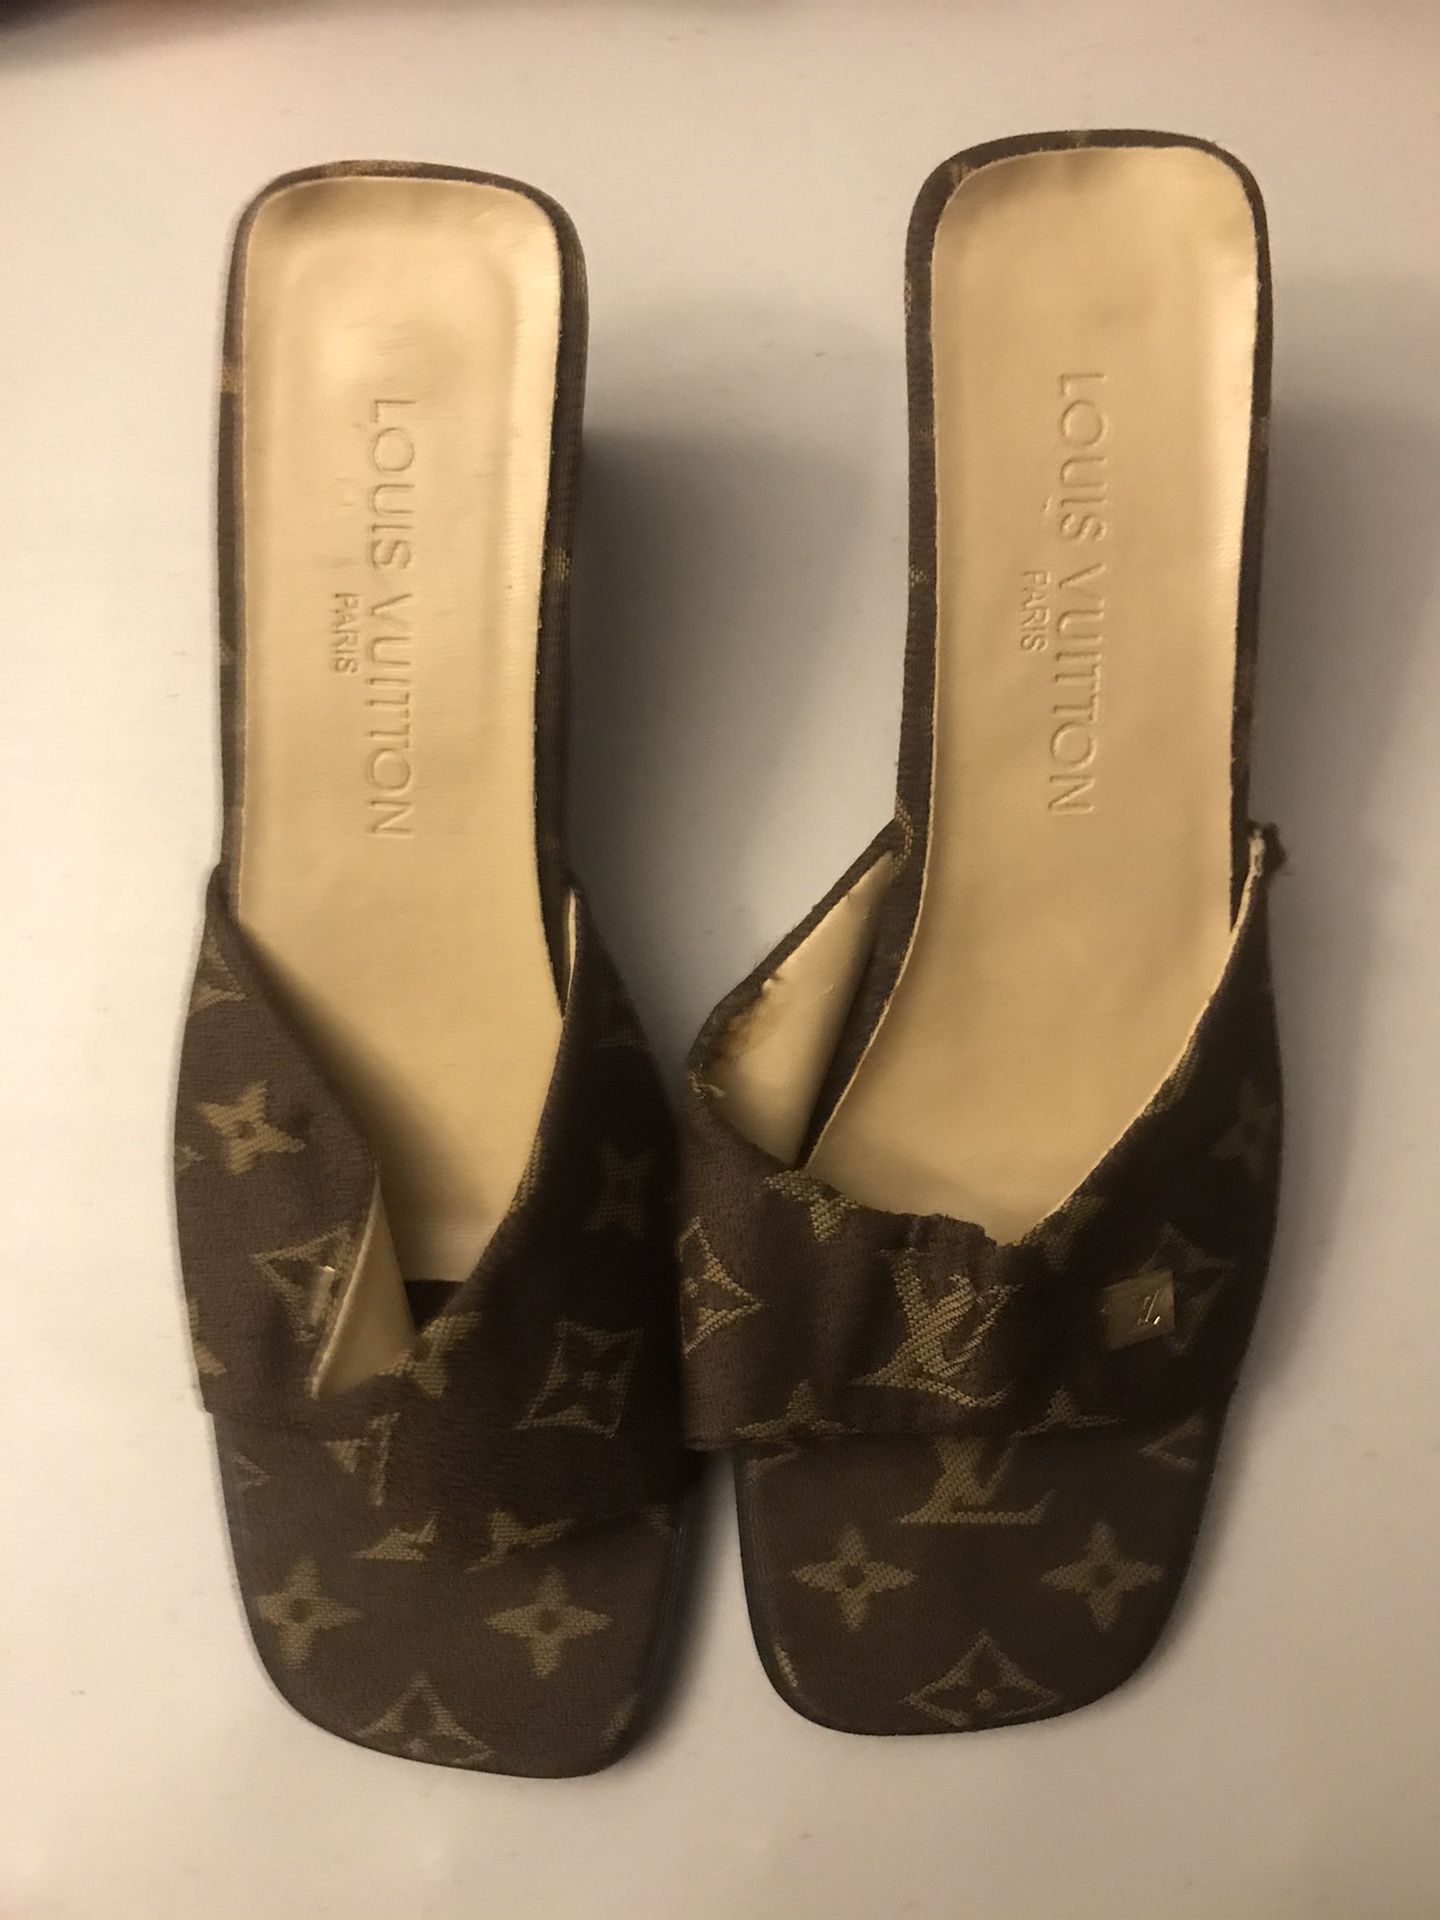 Authentic Louis Vuitton women’s heels beat size 10